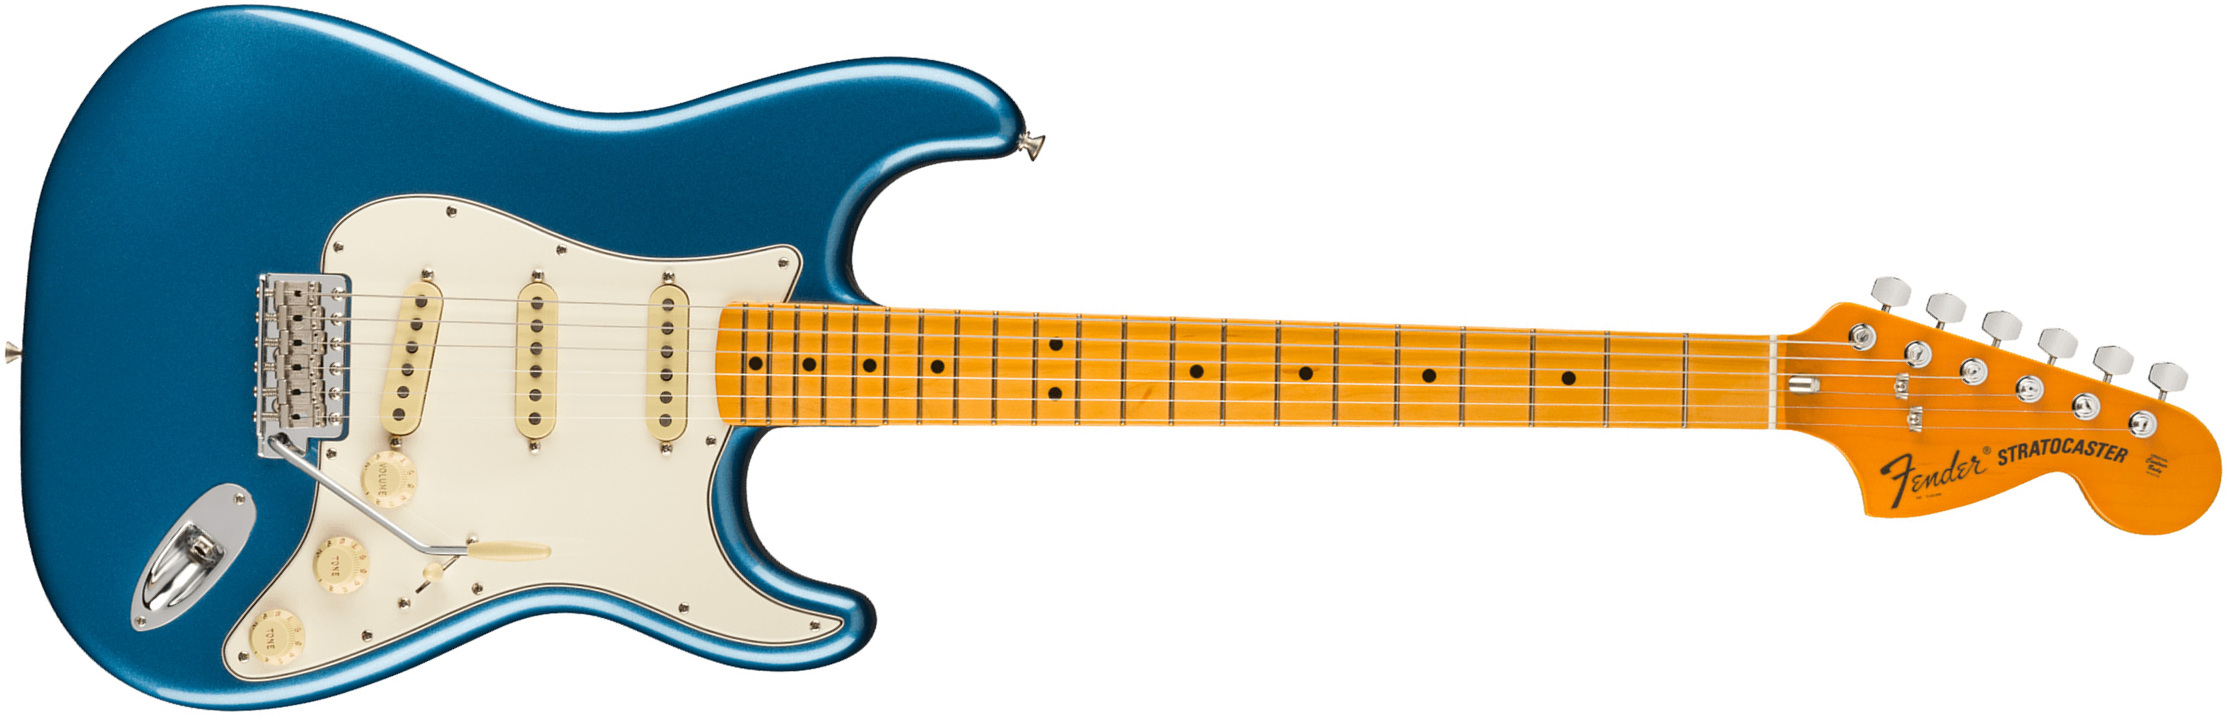 Fender Strat 1973 American Vintage Ii Usa 3s Trem Mn - Lake Placid Blue - Elektrische gitaar in Str-vorm - Main picture